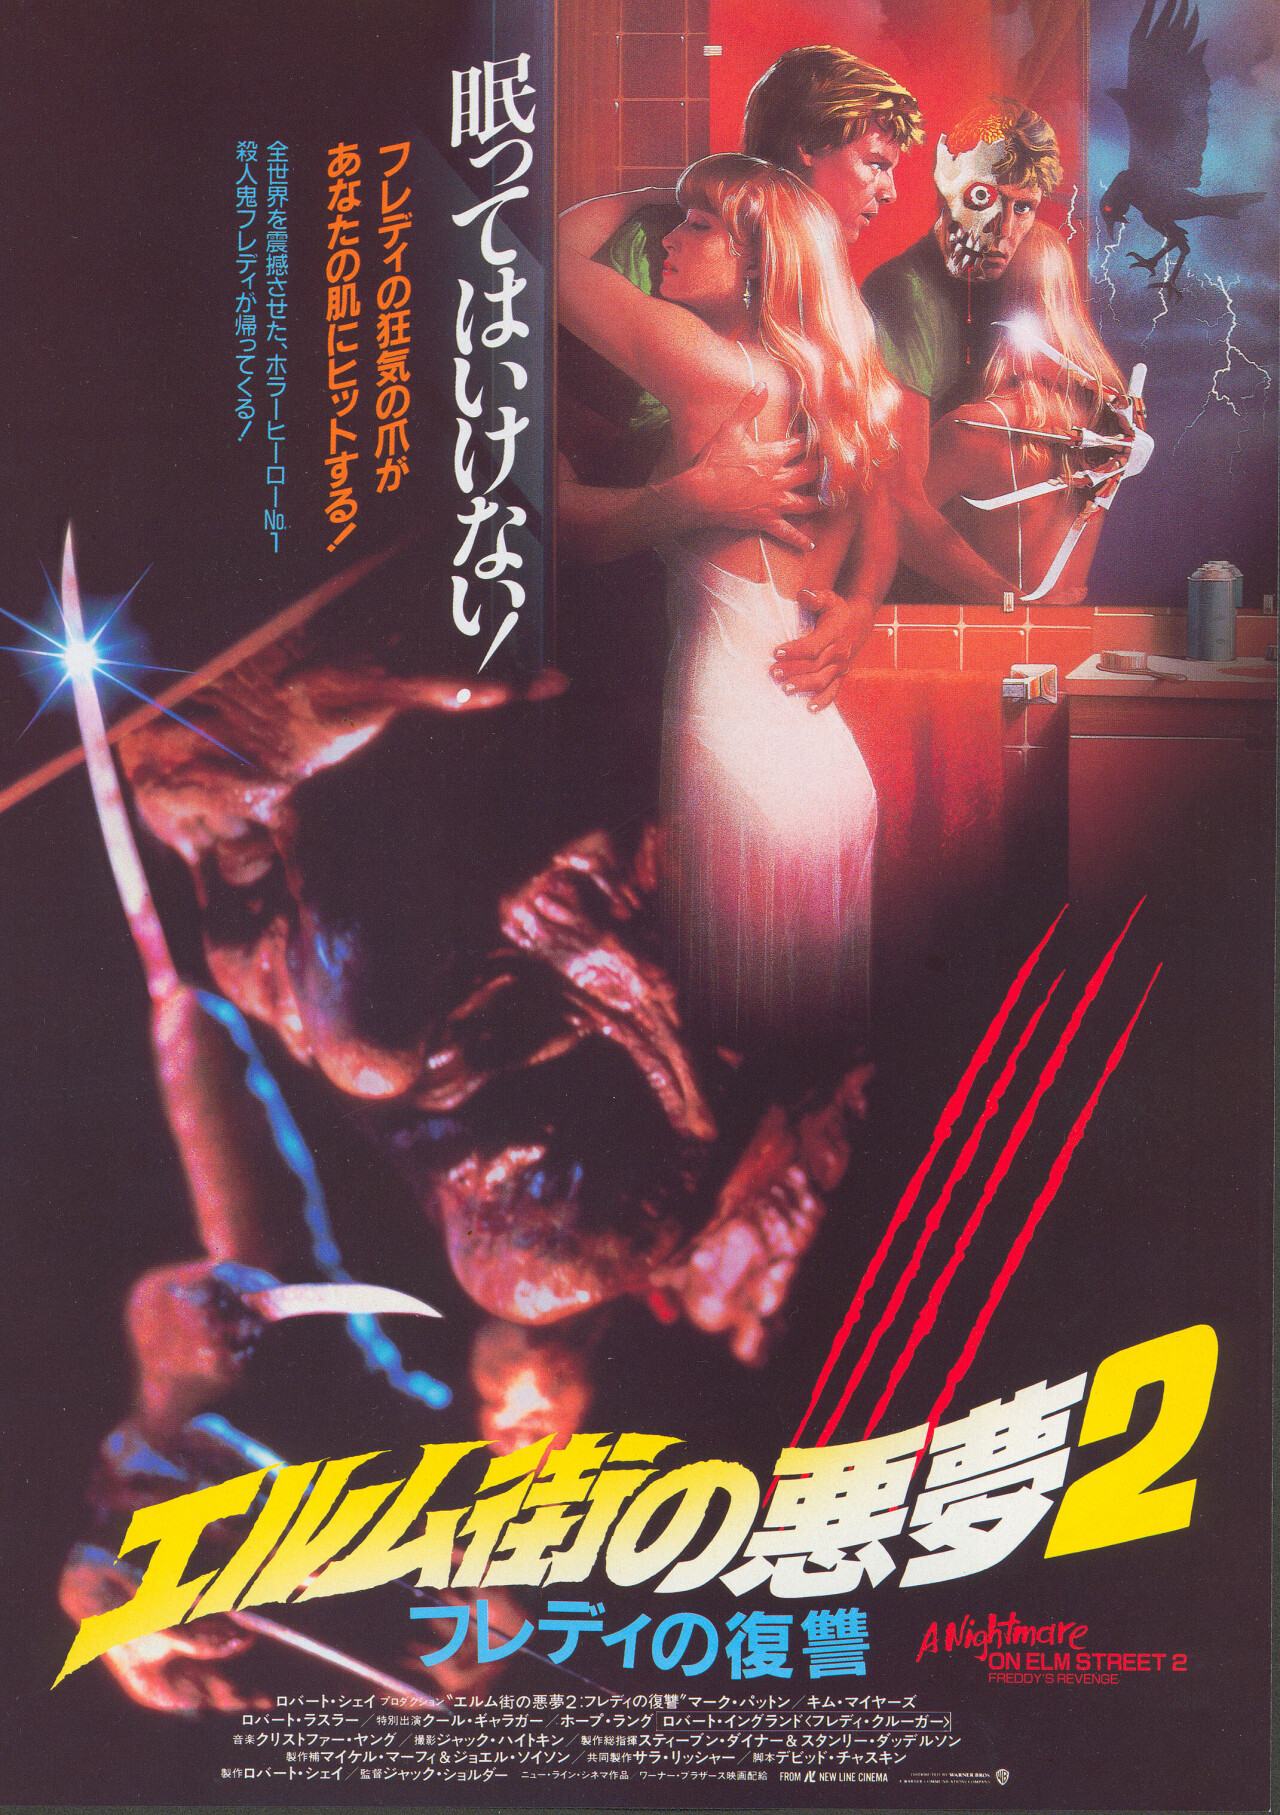 Кошмар на улице Вязов 2: Месть Фредди (A Nightmare on Elm Street 2 Freddys Revenge, 1985), режиссёр Джек Шолдер, японский постер к фильму (ужасы, 1987 год)